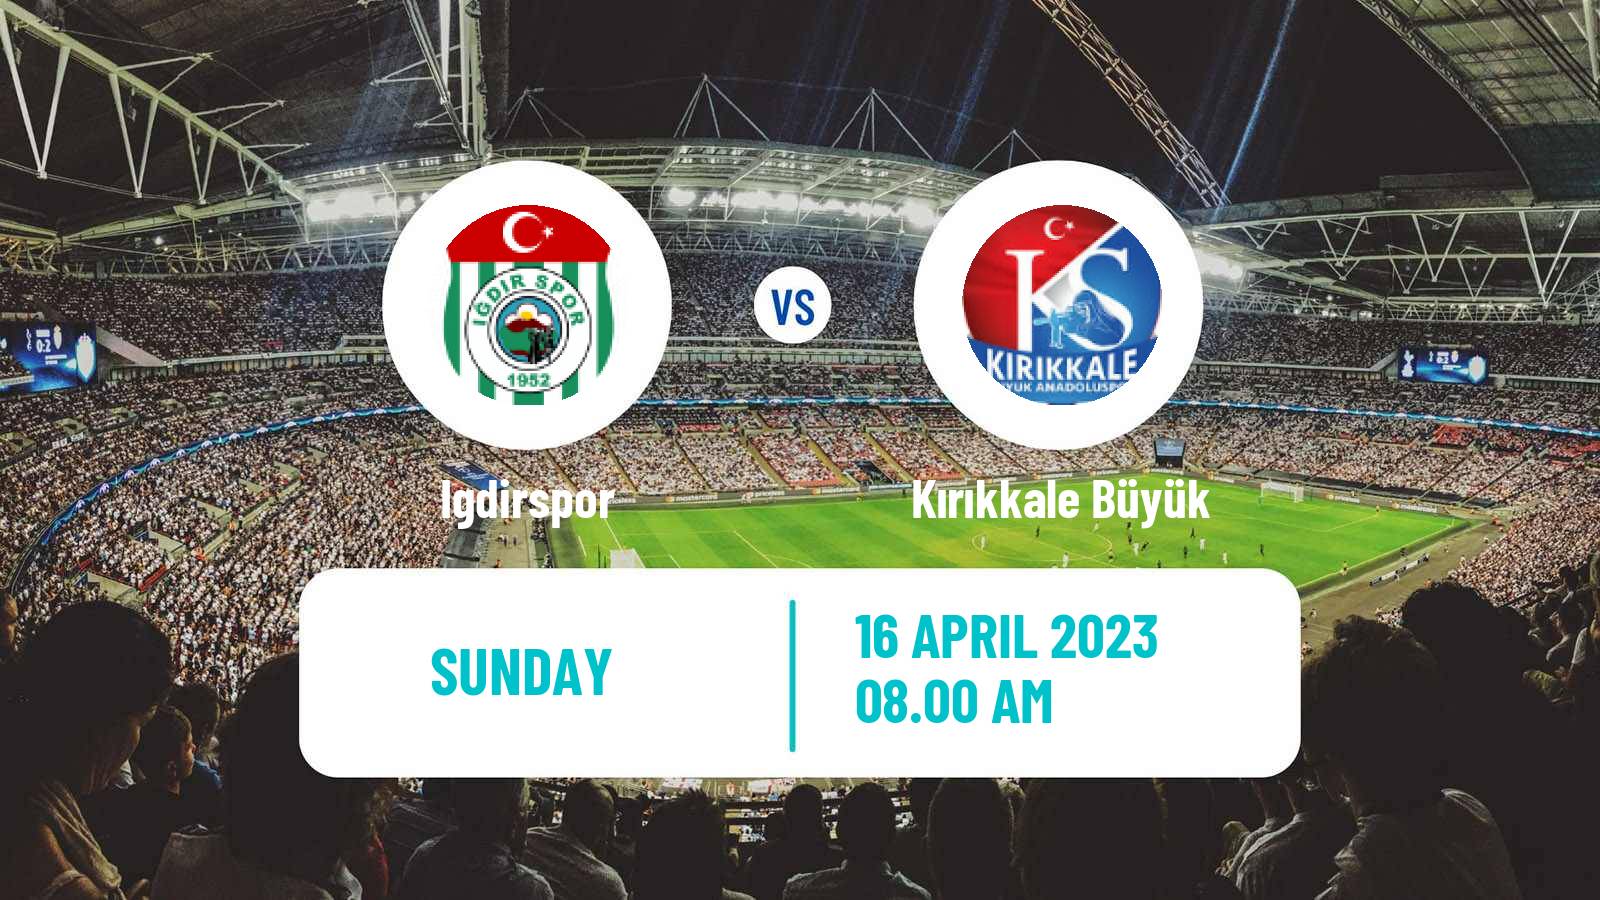 Soccer Turkish 3 Lig Group 2 Igdirspor - Kırıkkale Büyük